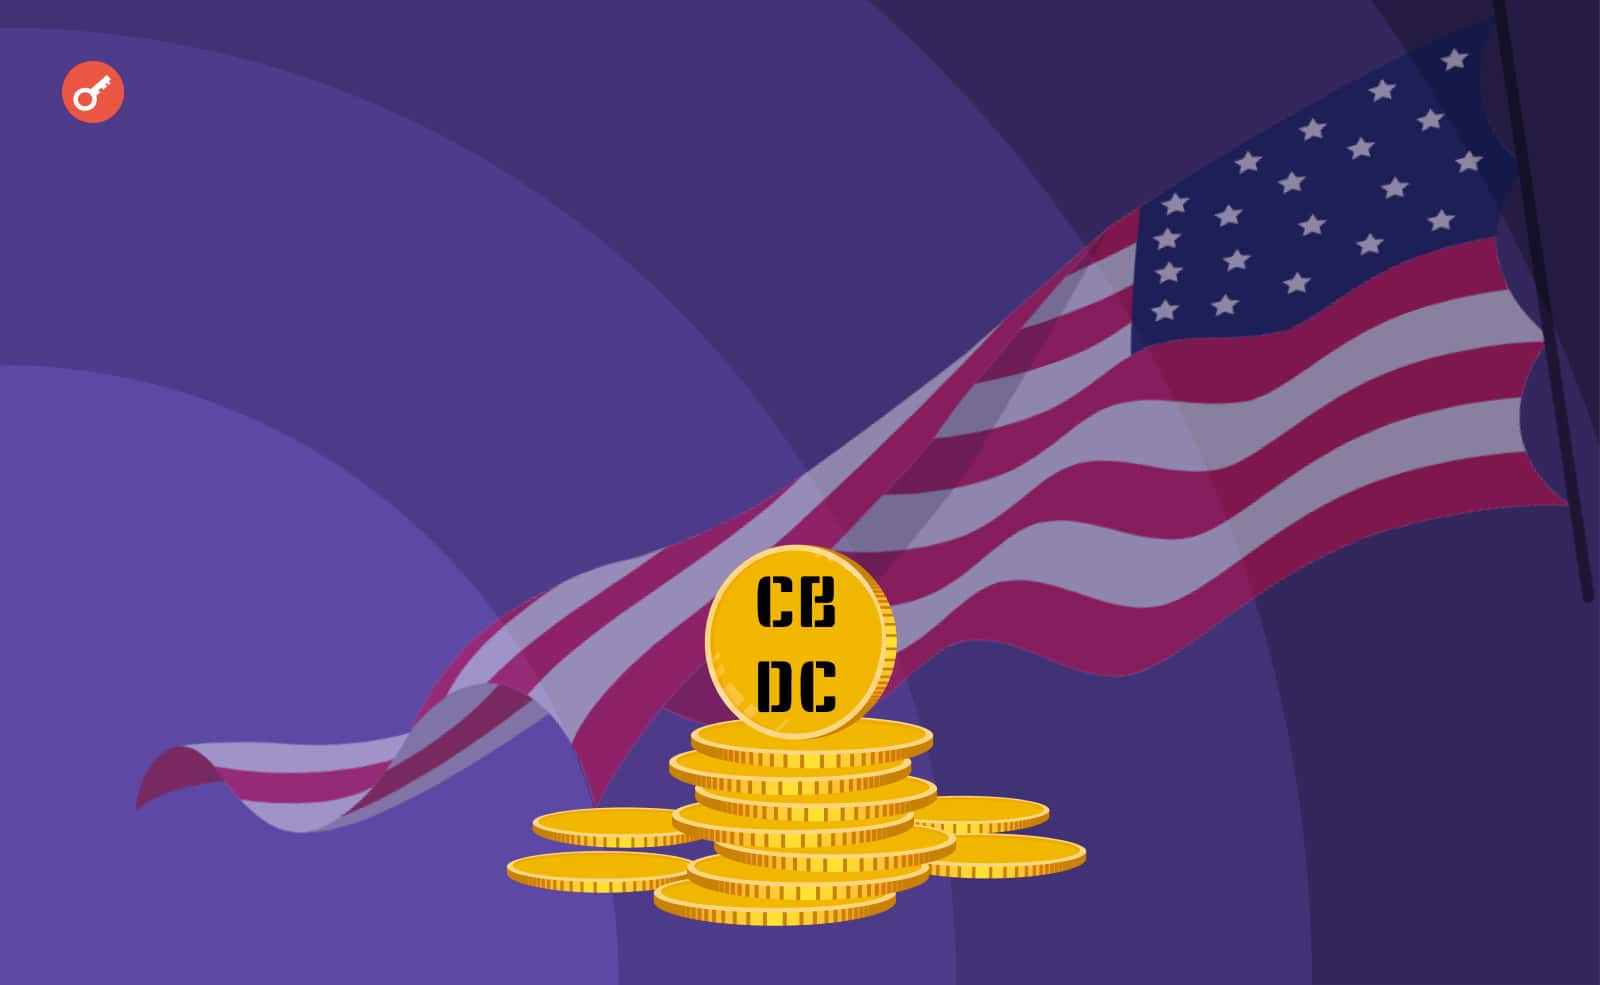 Скарбниця США: впровадження CBDC в економіку дестабілізує банківську систему. Головний колаж новини.